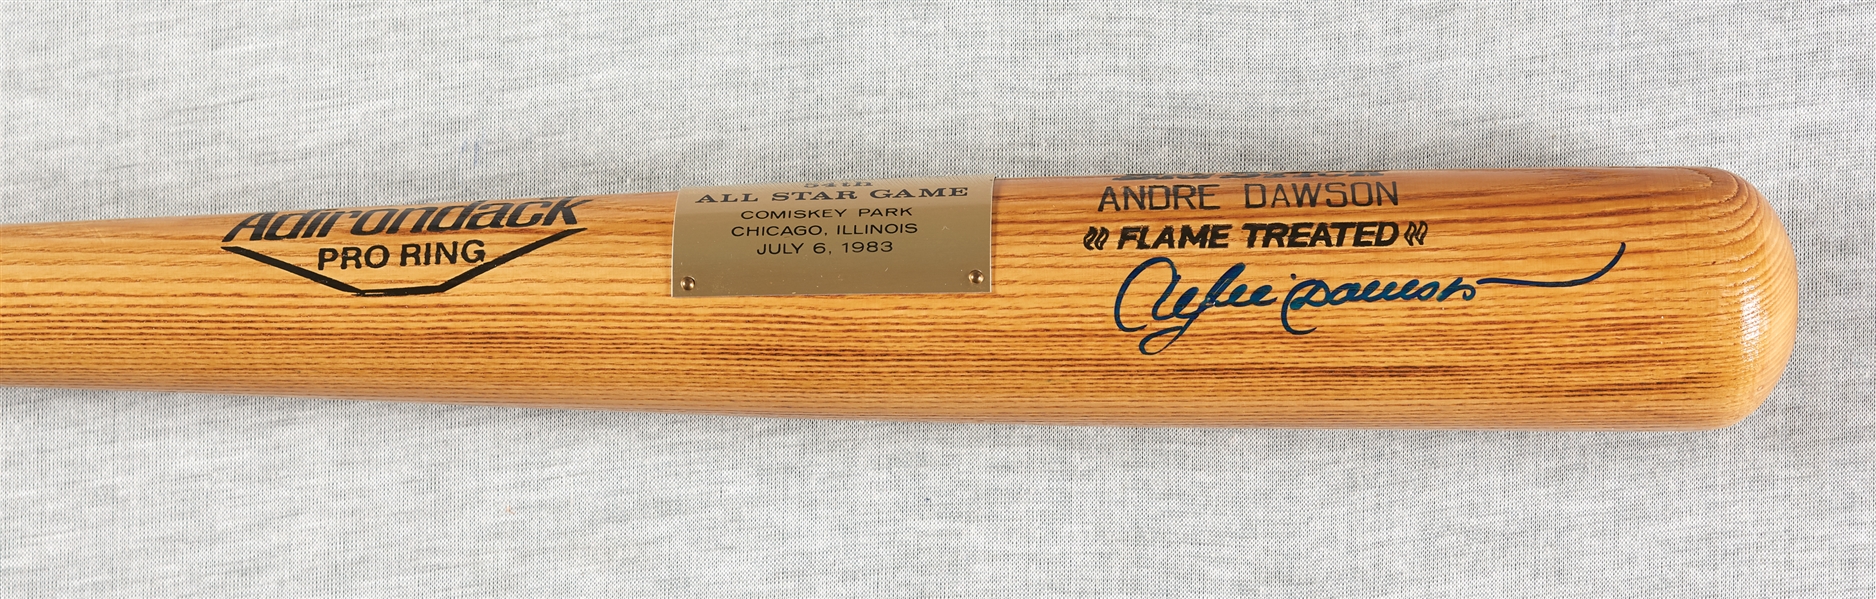 Andre Dawson Signed 1983 All-Star Game Commemorative Adirondack Bat (Fanatics/Dawson LOA)